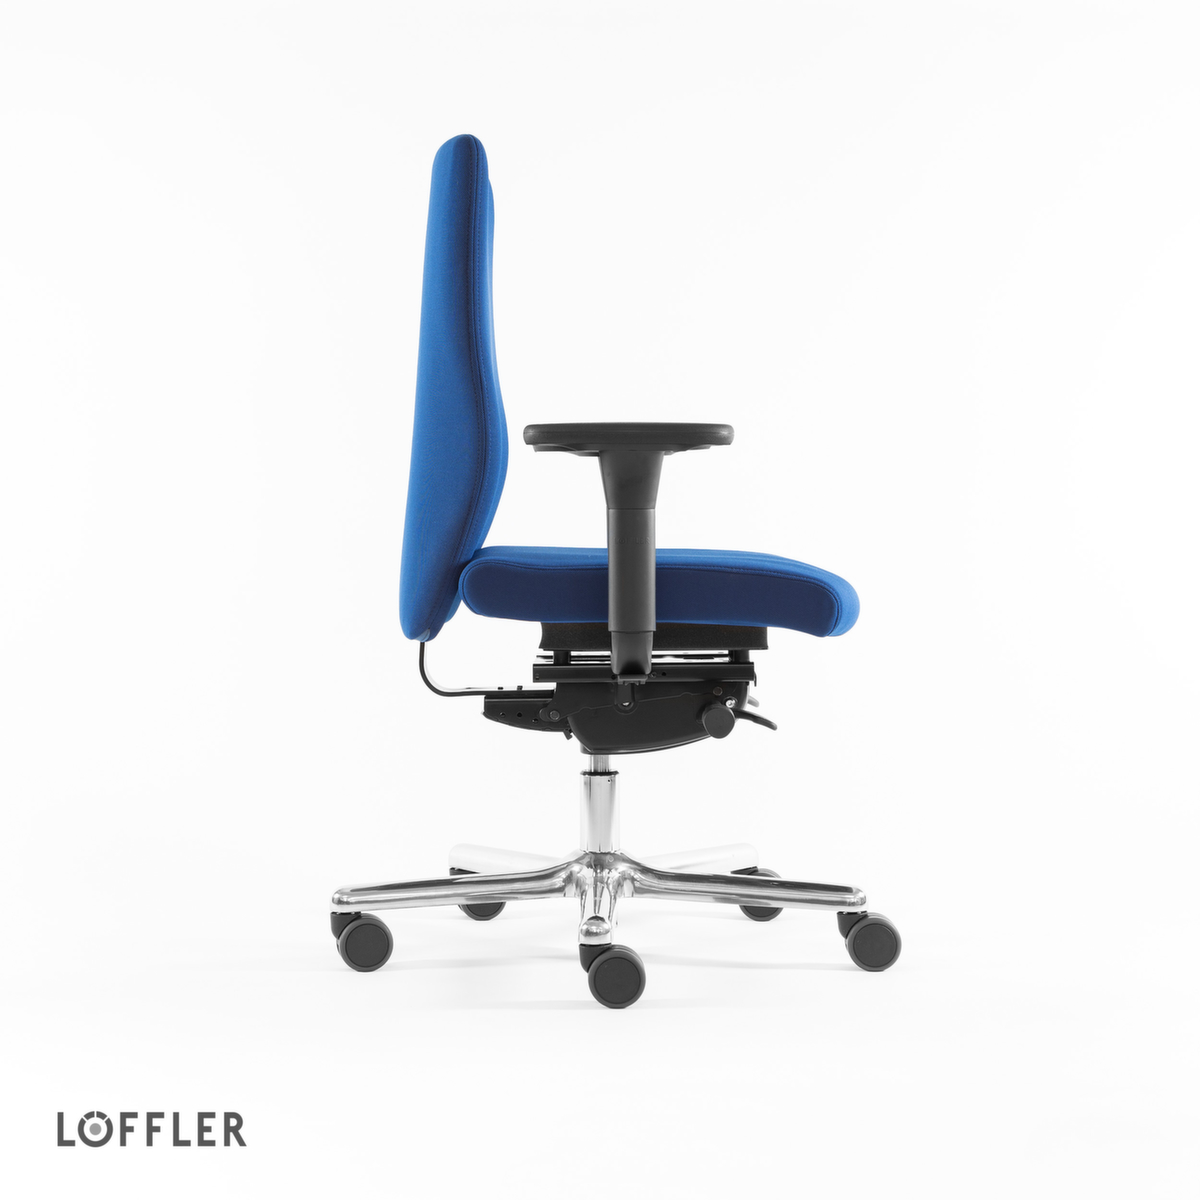 Löffler Bureaustoel met stuitbeenontlasting, blauw  ZOOM